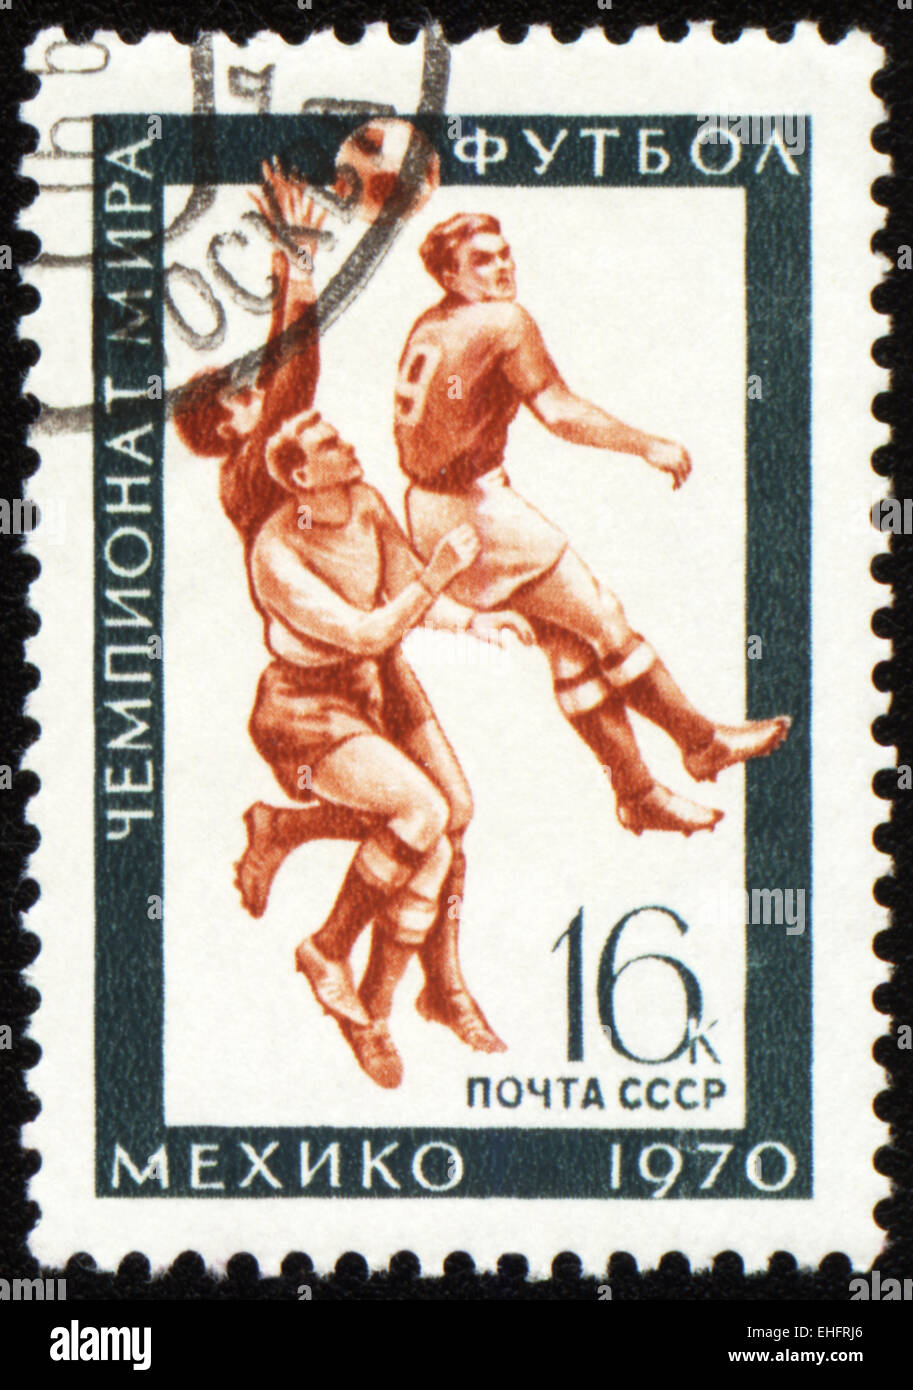 Urss - circa 1970 : timbre imprimé dans l'URSS montre du monde - Mexique 1970 Banque D'Images